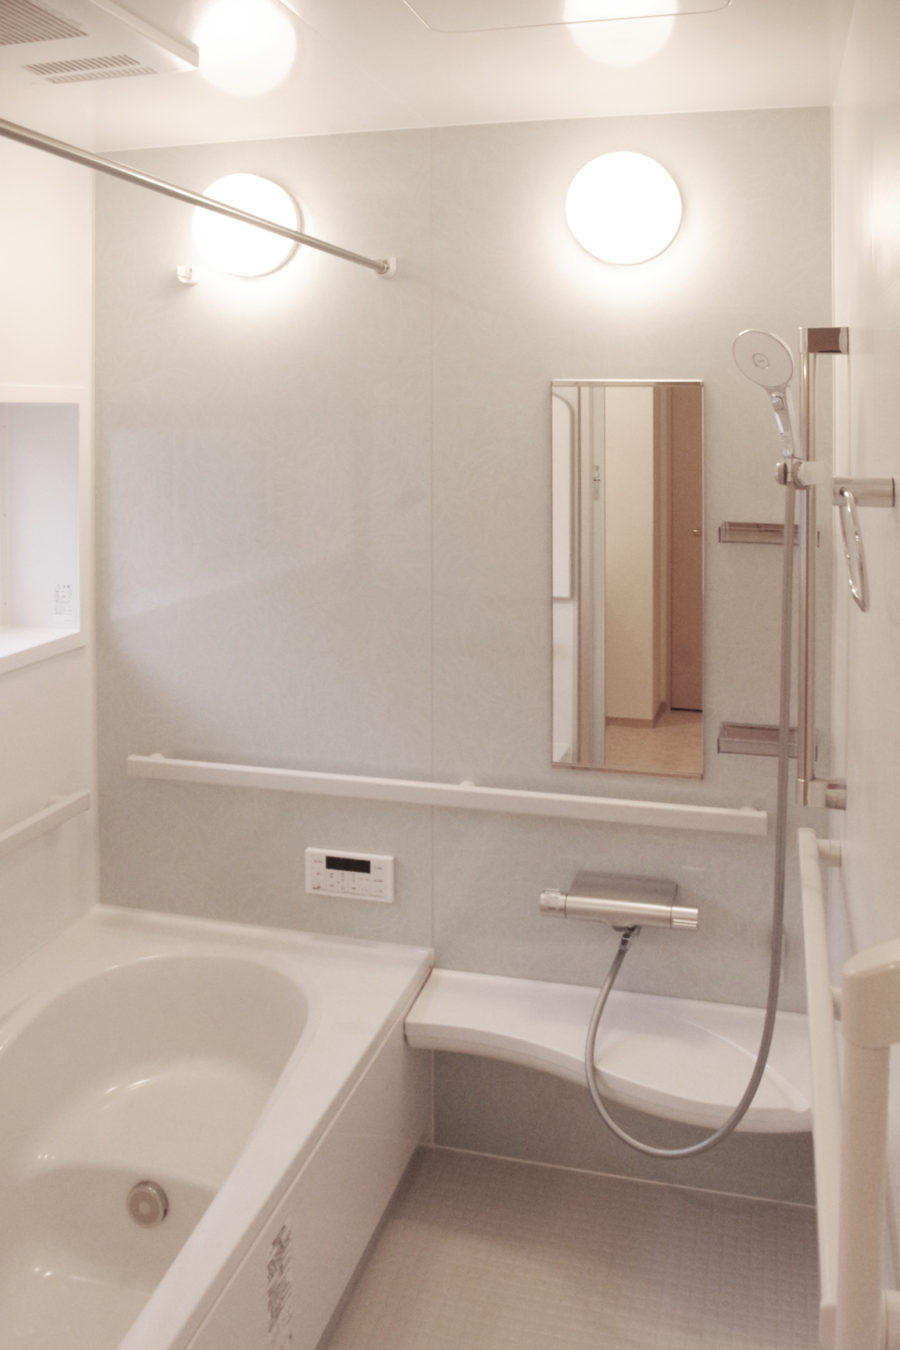 注文住宅「車椅子での生活を考慮したバリアフリーの家」のバスルームの施工事例